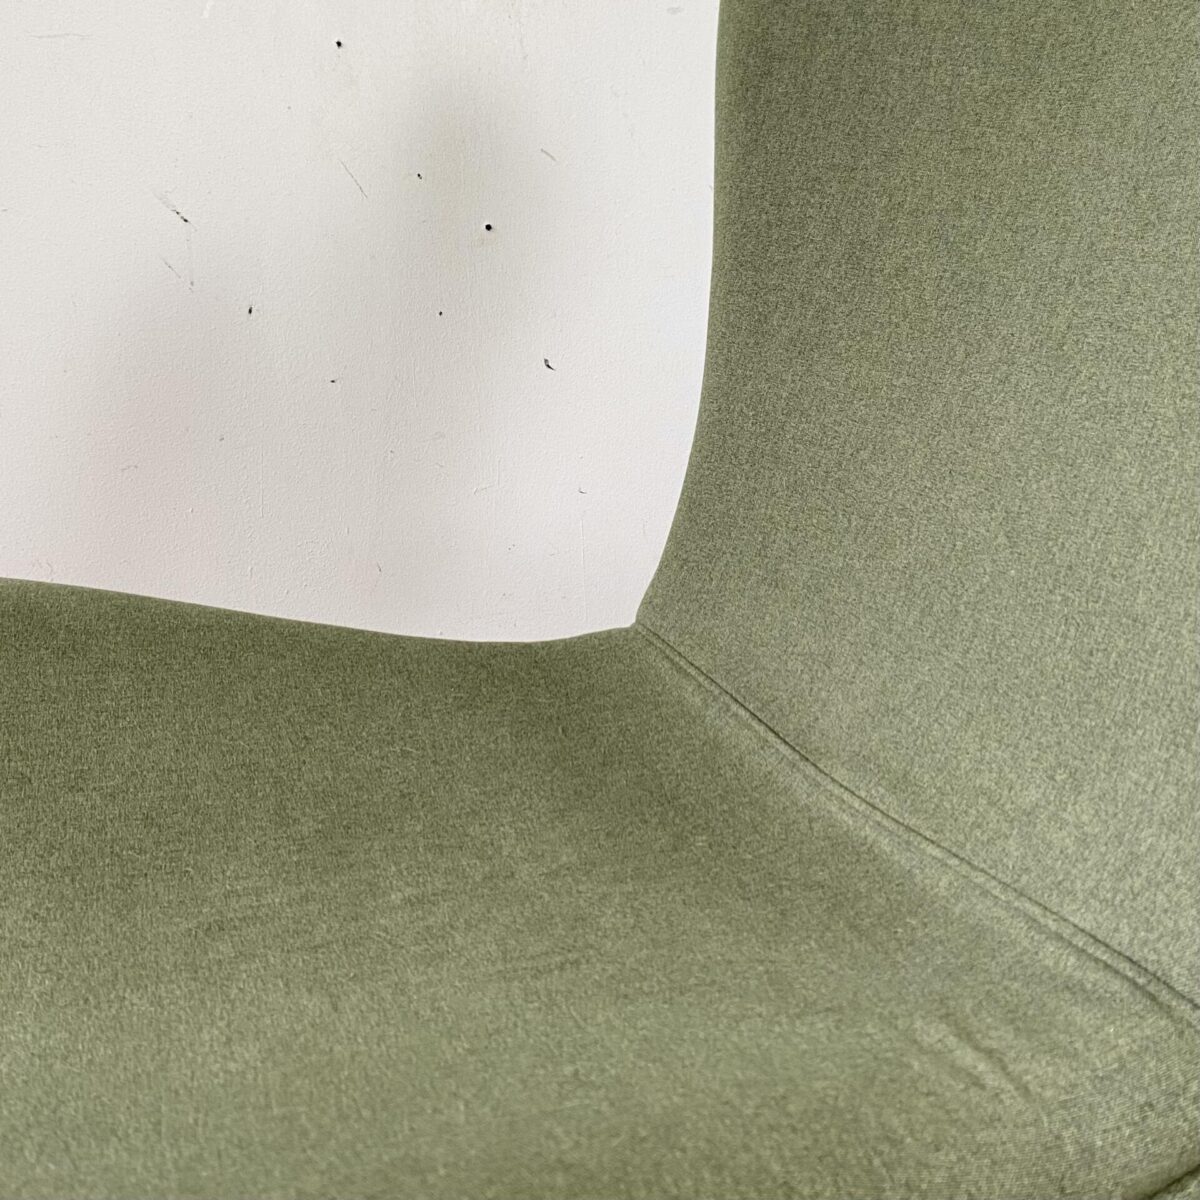 Deuxieme.shop egg Chair. Zwei neuere Lounge Sessel mit Sternfuss. 70x70cm Höhe 82cm Sitzhöhe 38cm. Die gepolsterten Schalen sind mit grün meliertem Stoff überzogen, der drehbare Fuss ist aus Chromstahl. 